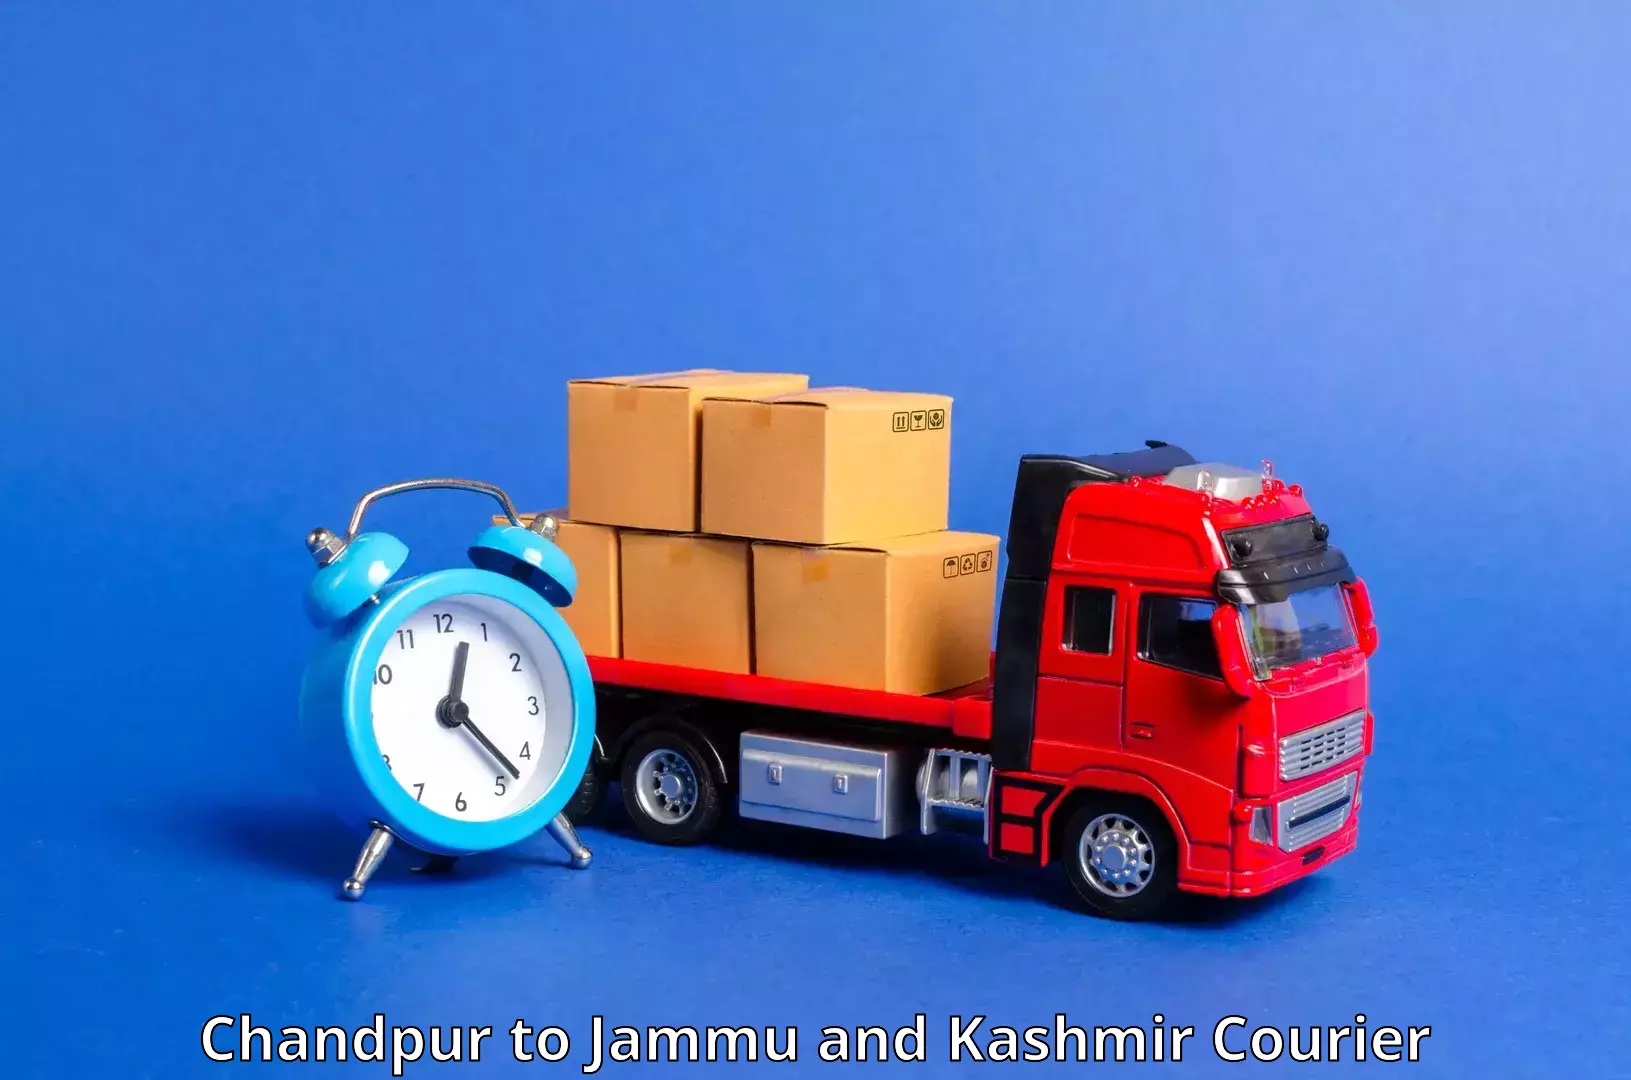 Modern courier technology Chandpur to University of Kashmir Srinagar